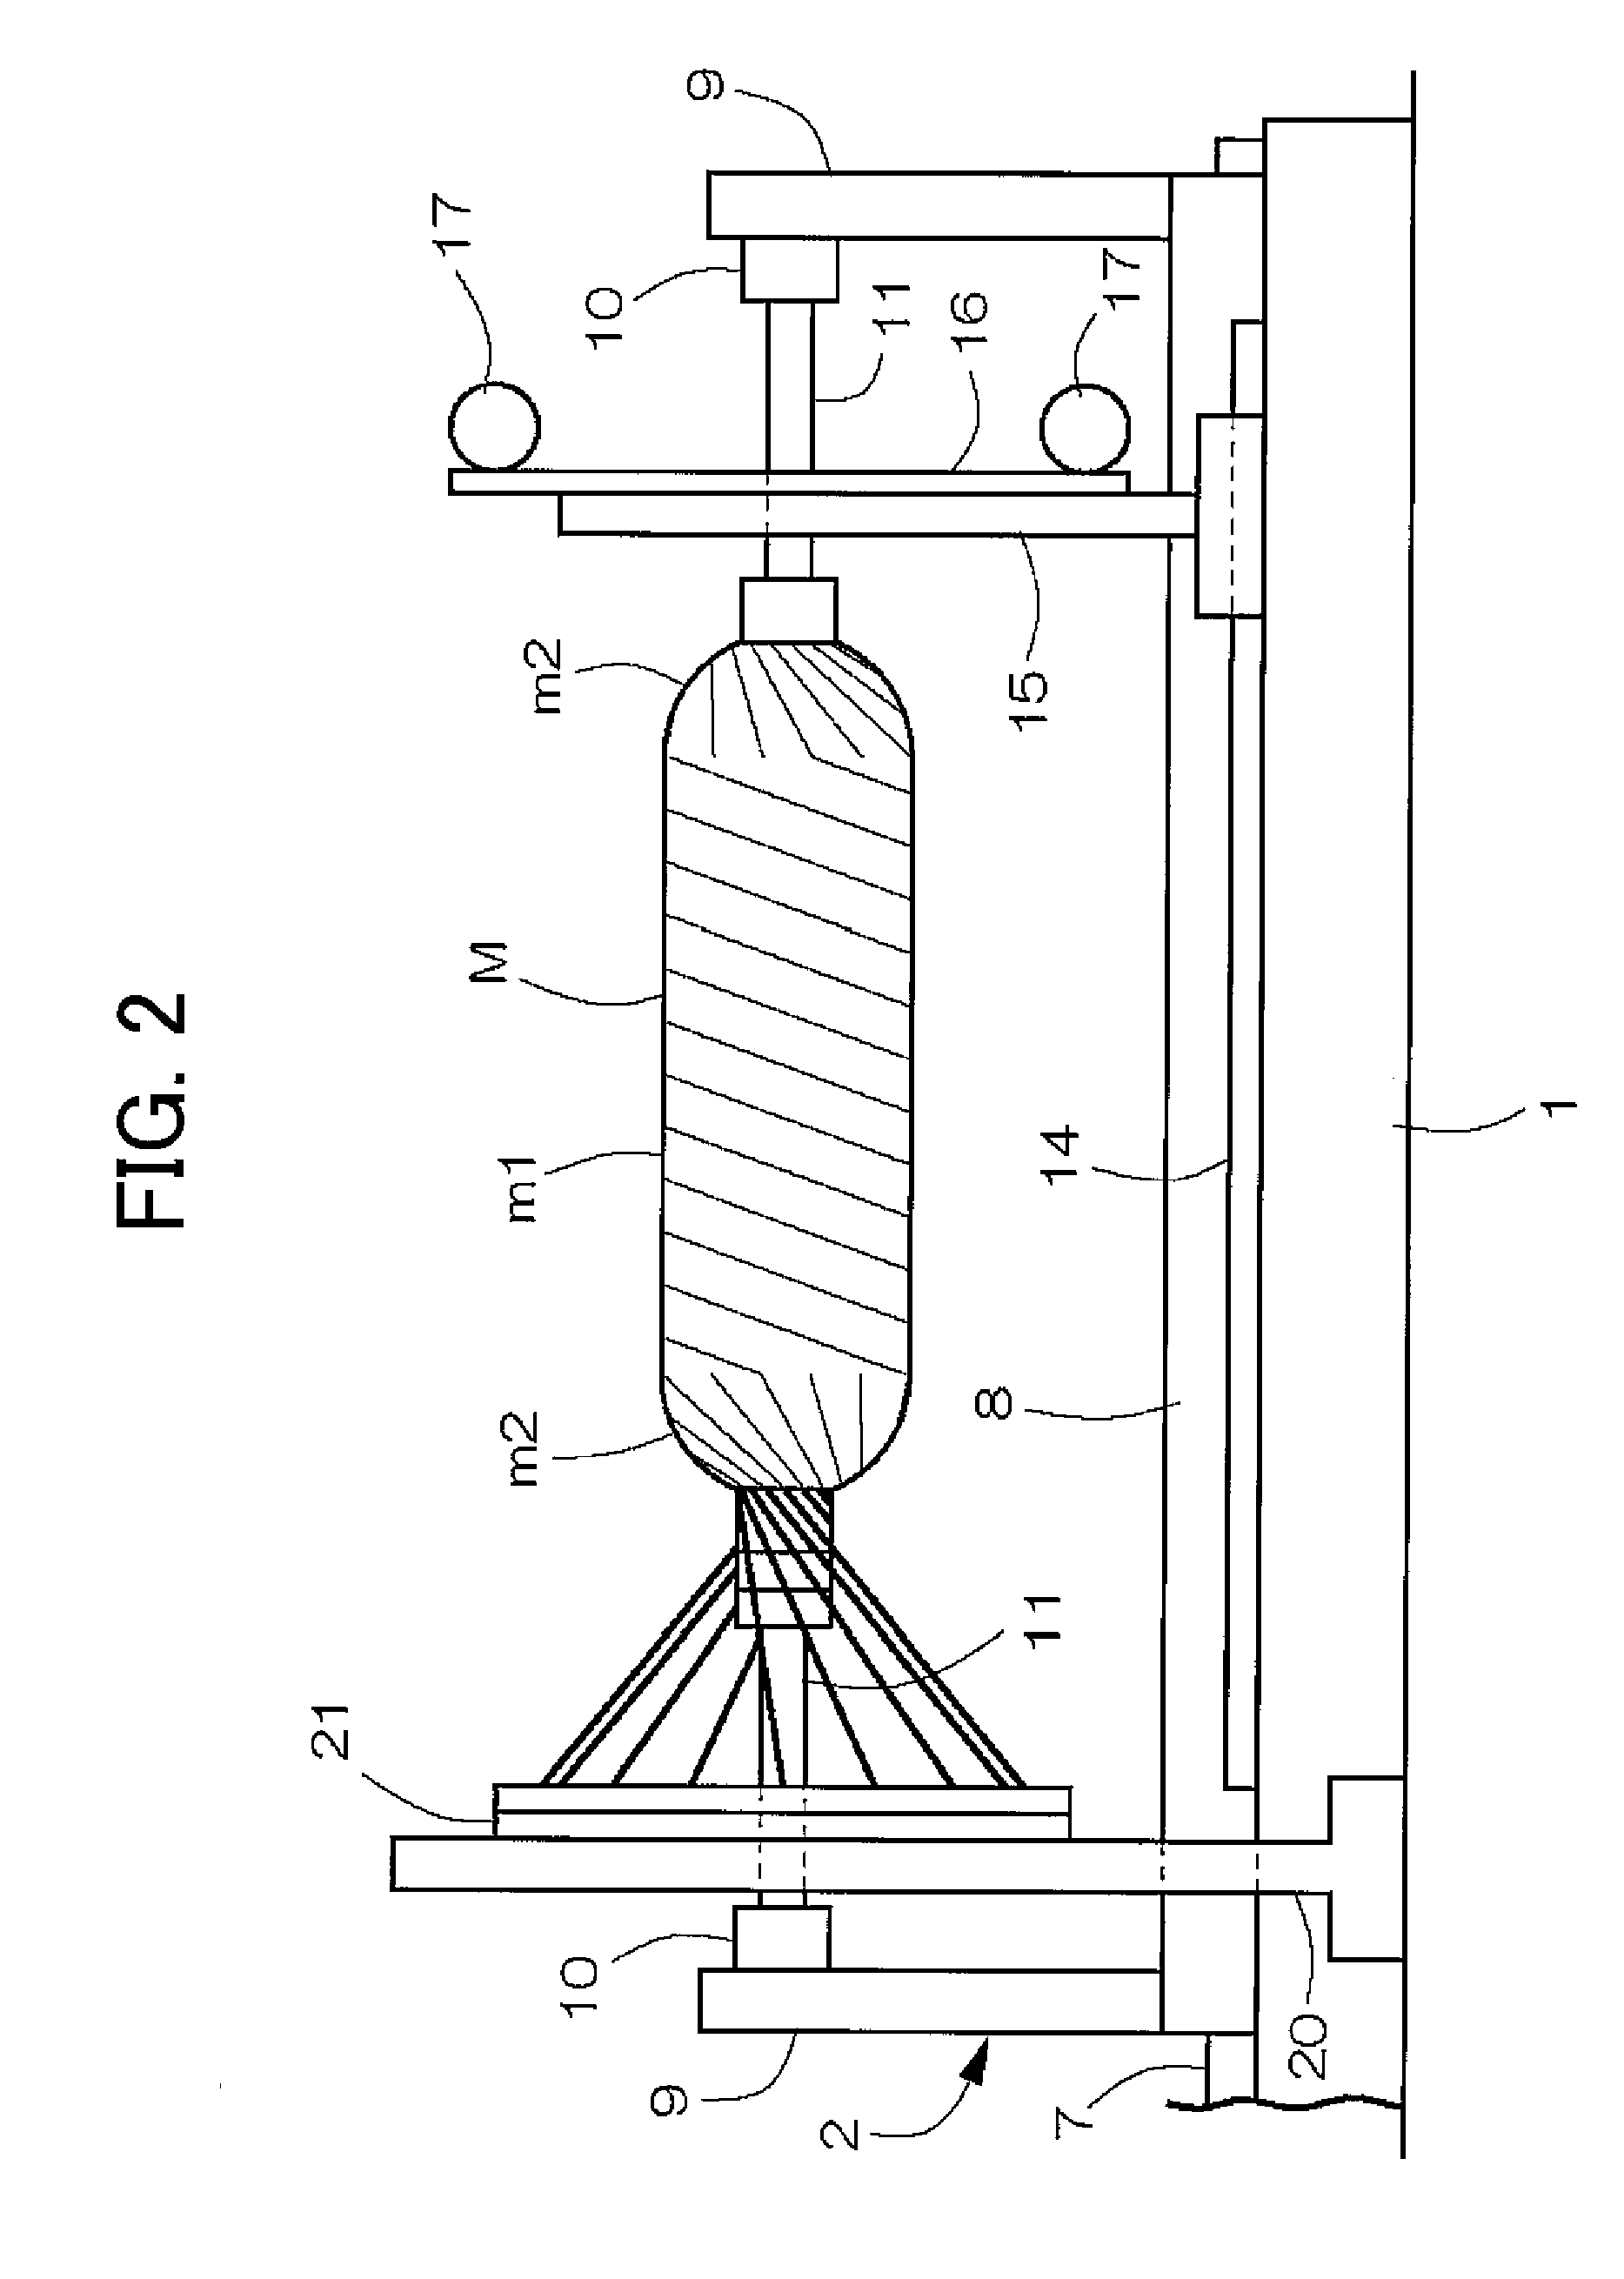 Filament winding apparatus